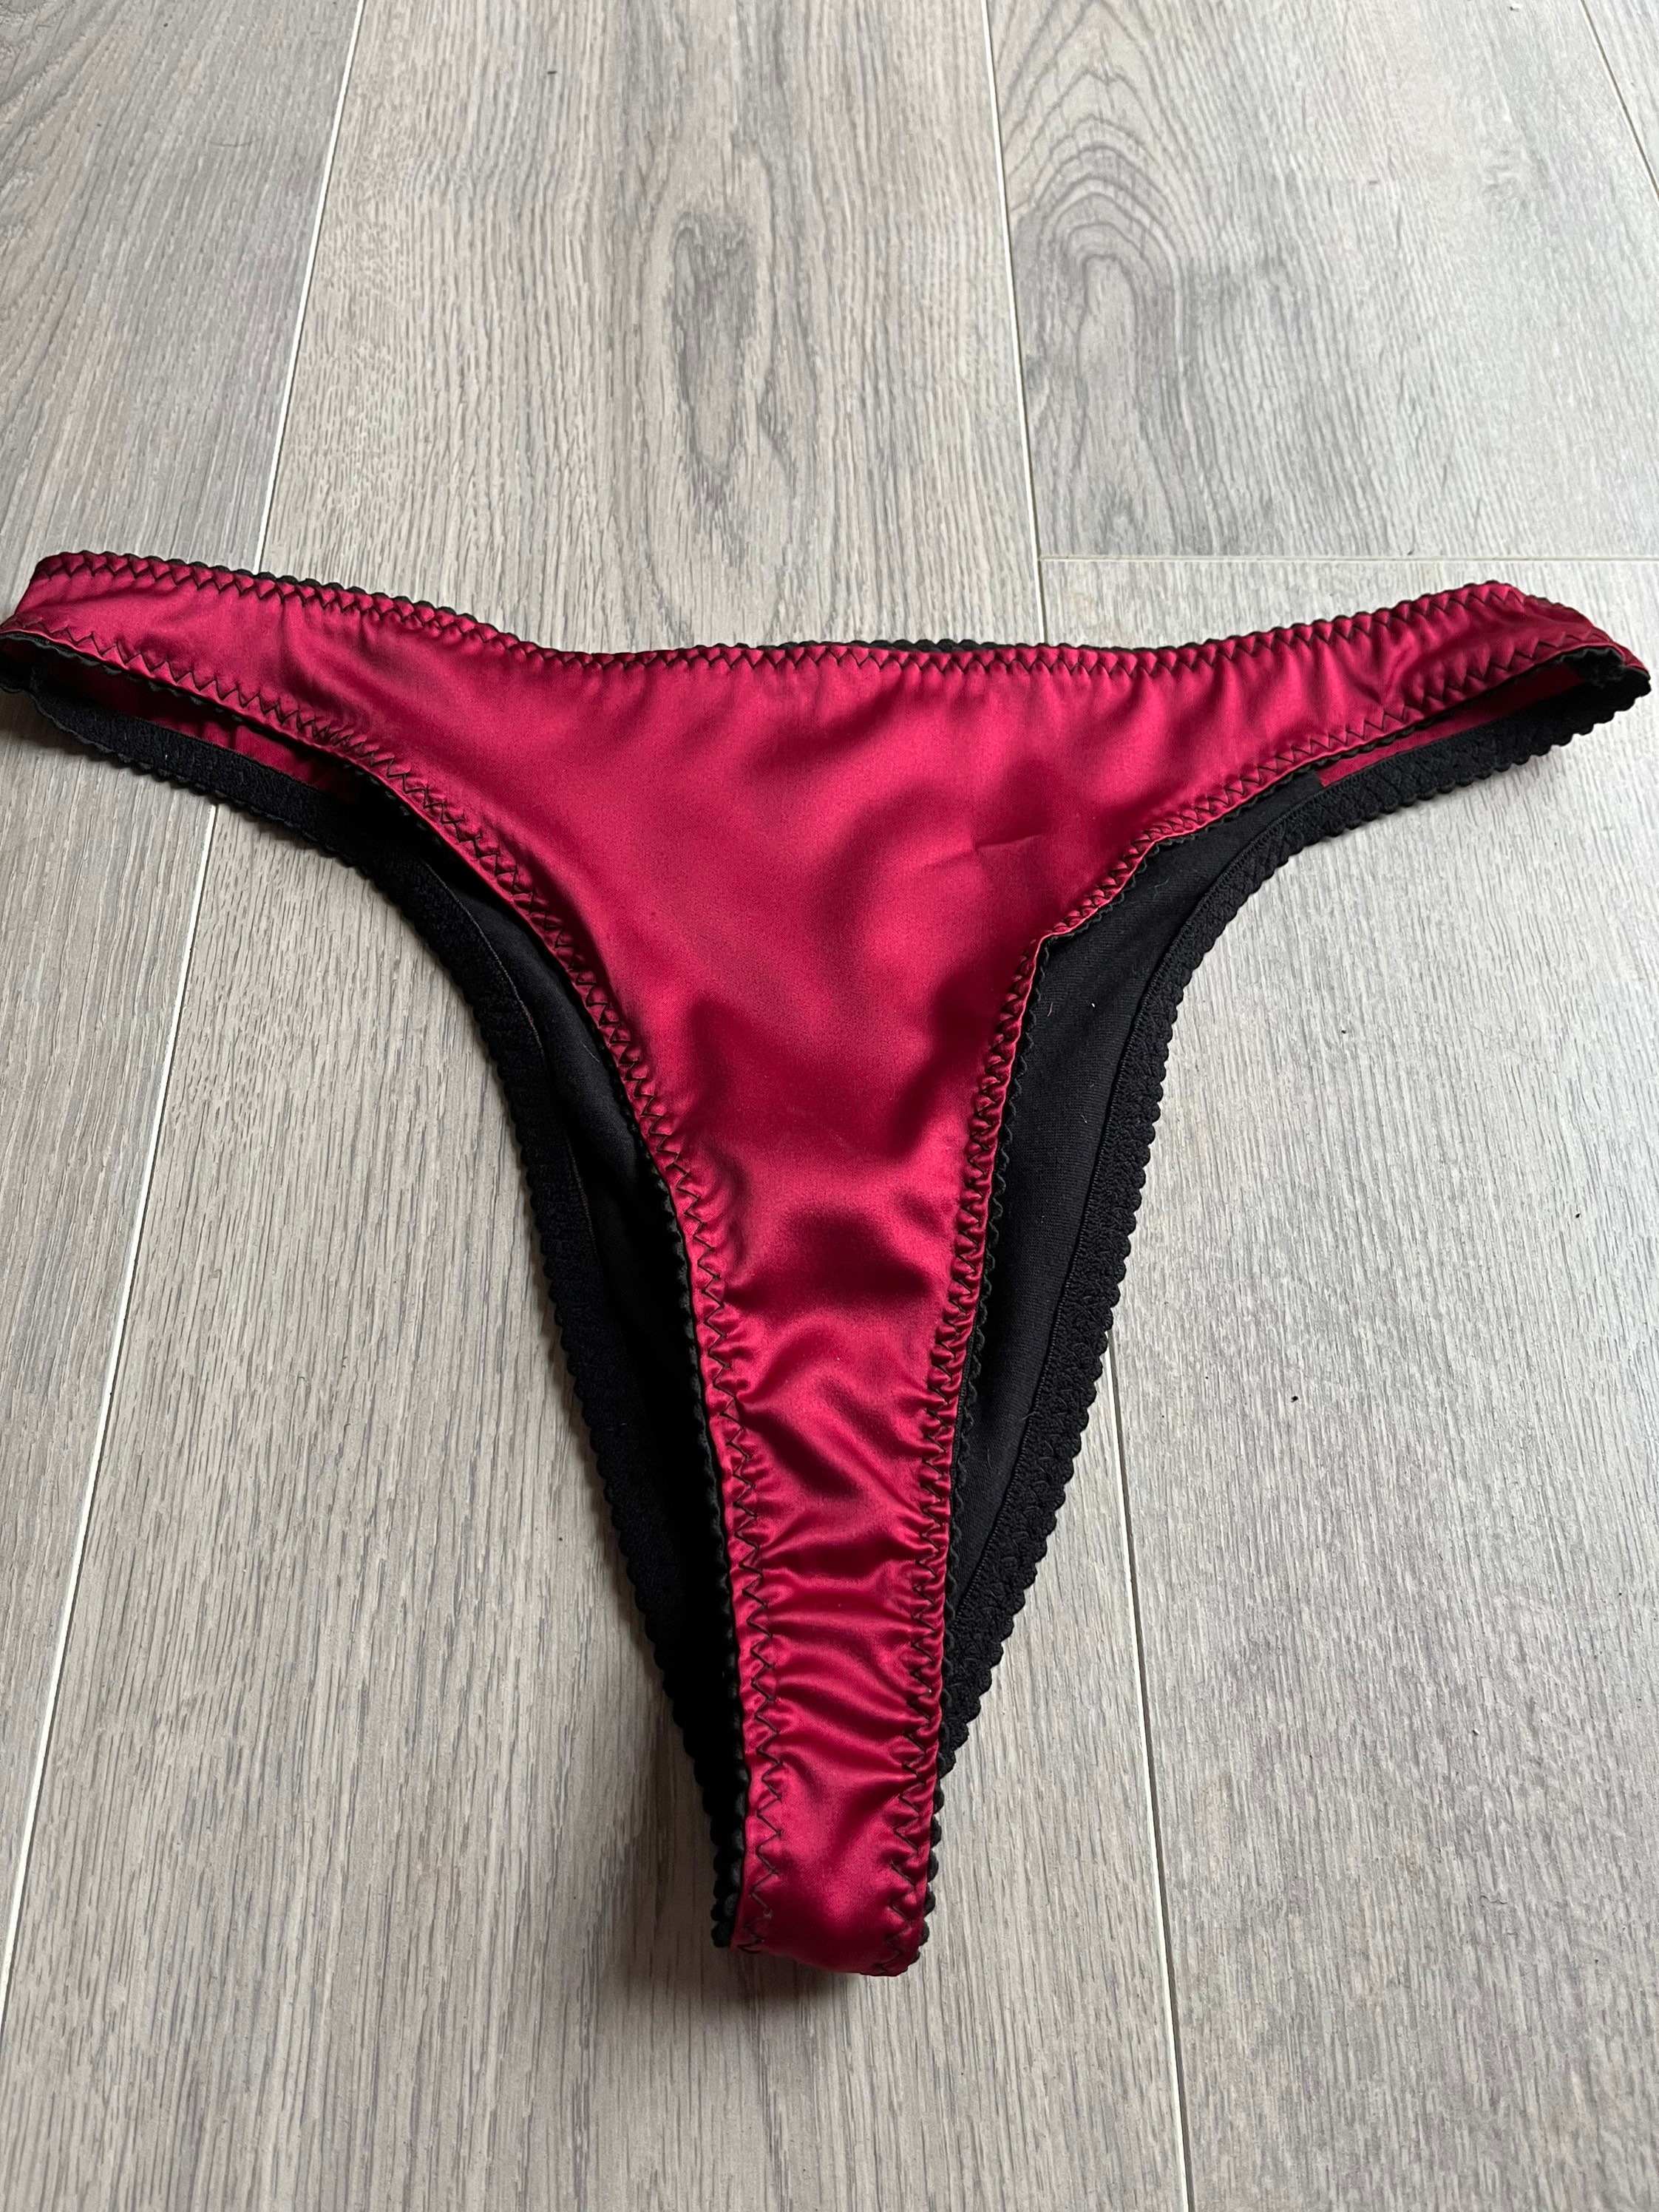 VASSARETTE Tanga Red Thong Panties - Available Sizes S/M/L